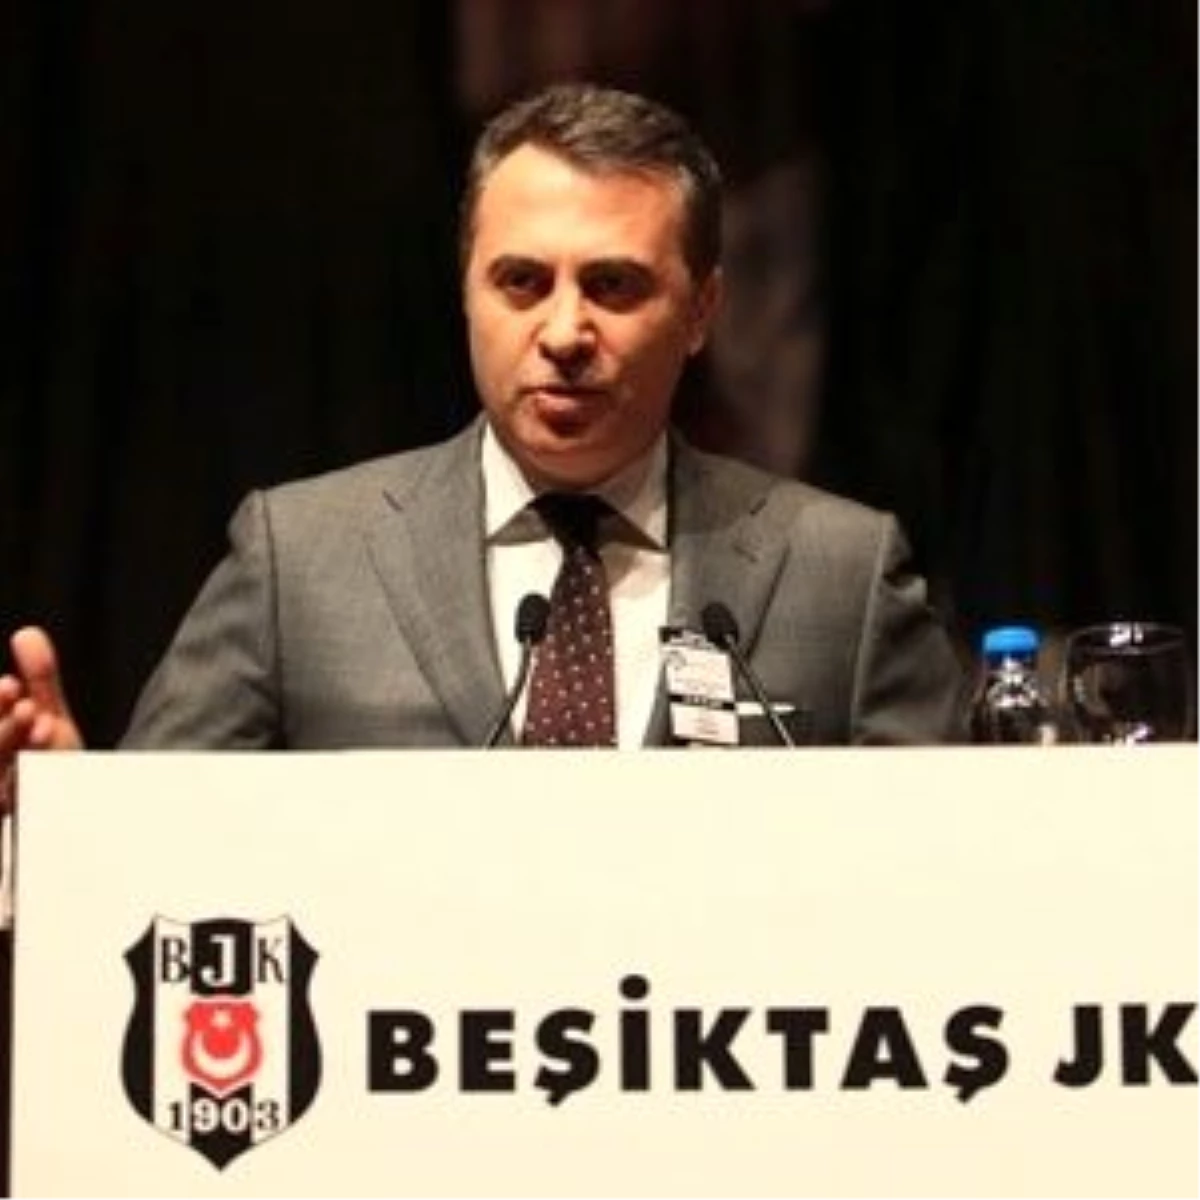 Beşiktaş Başkan Adayı Orman: "Beşiktaş İçin Her Türlü Riski Alırım"